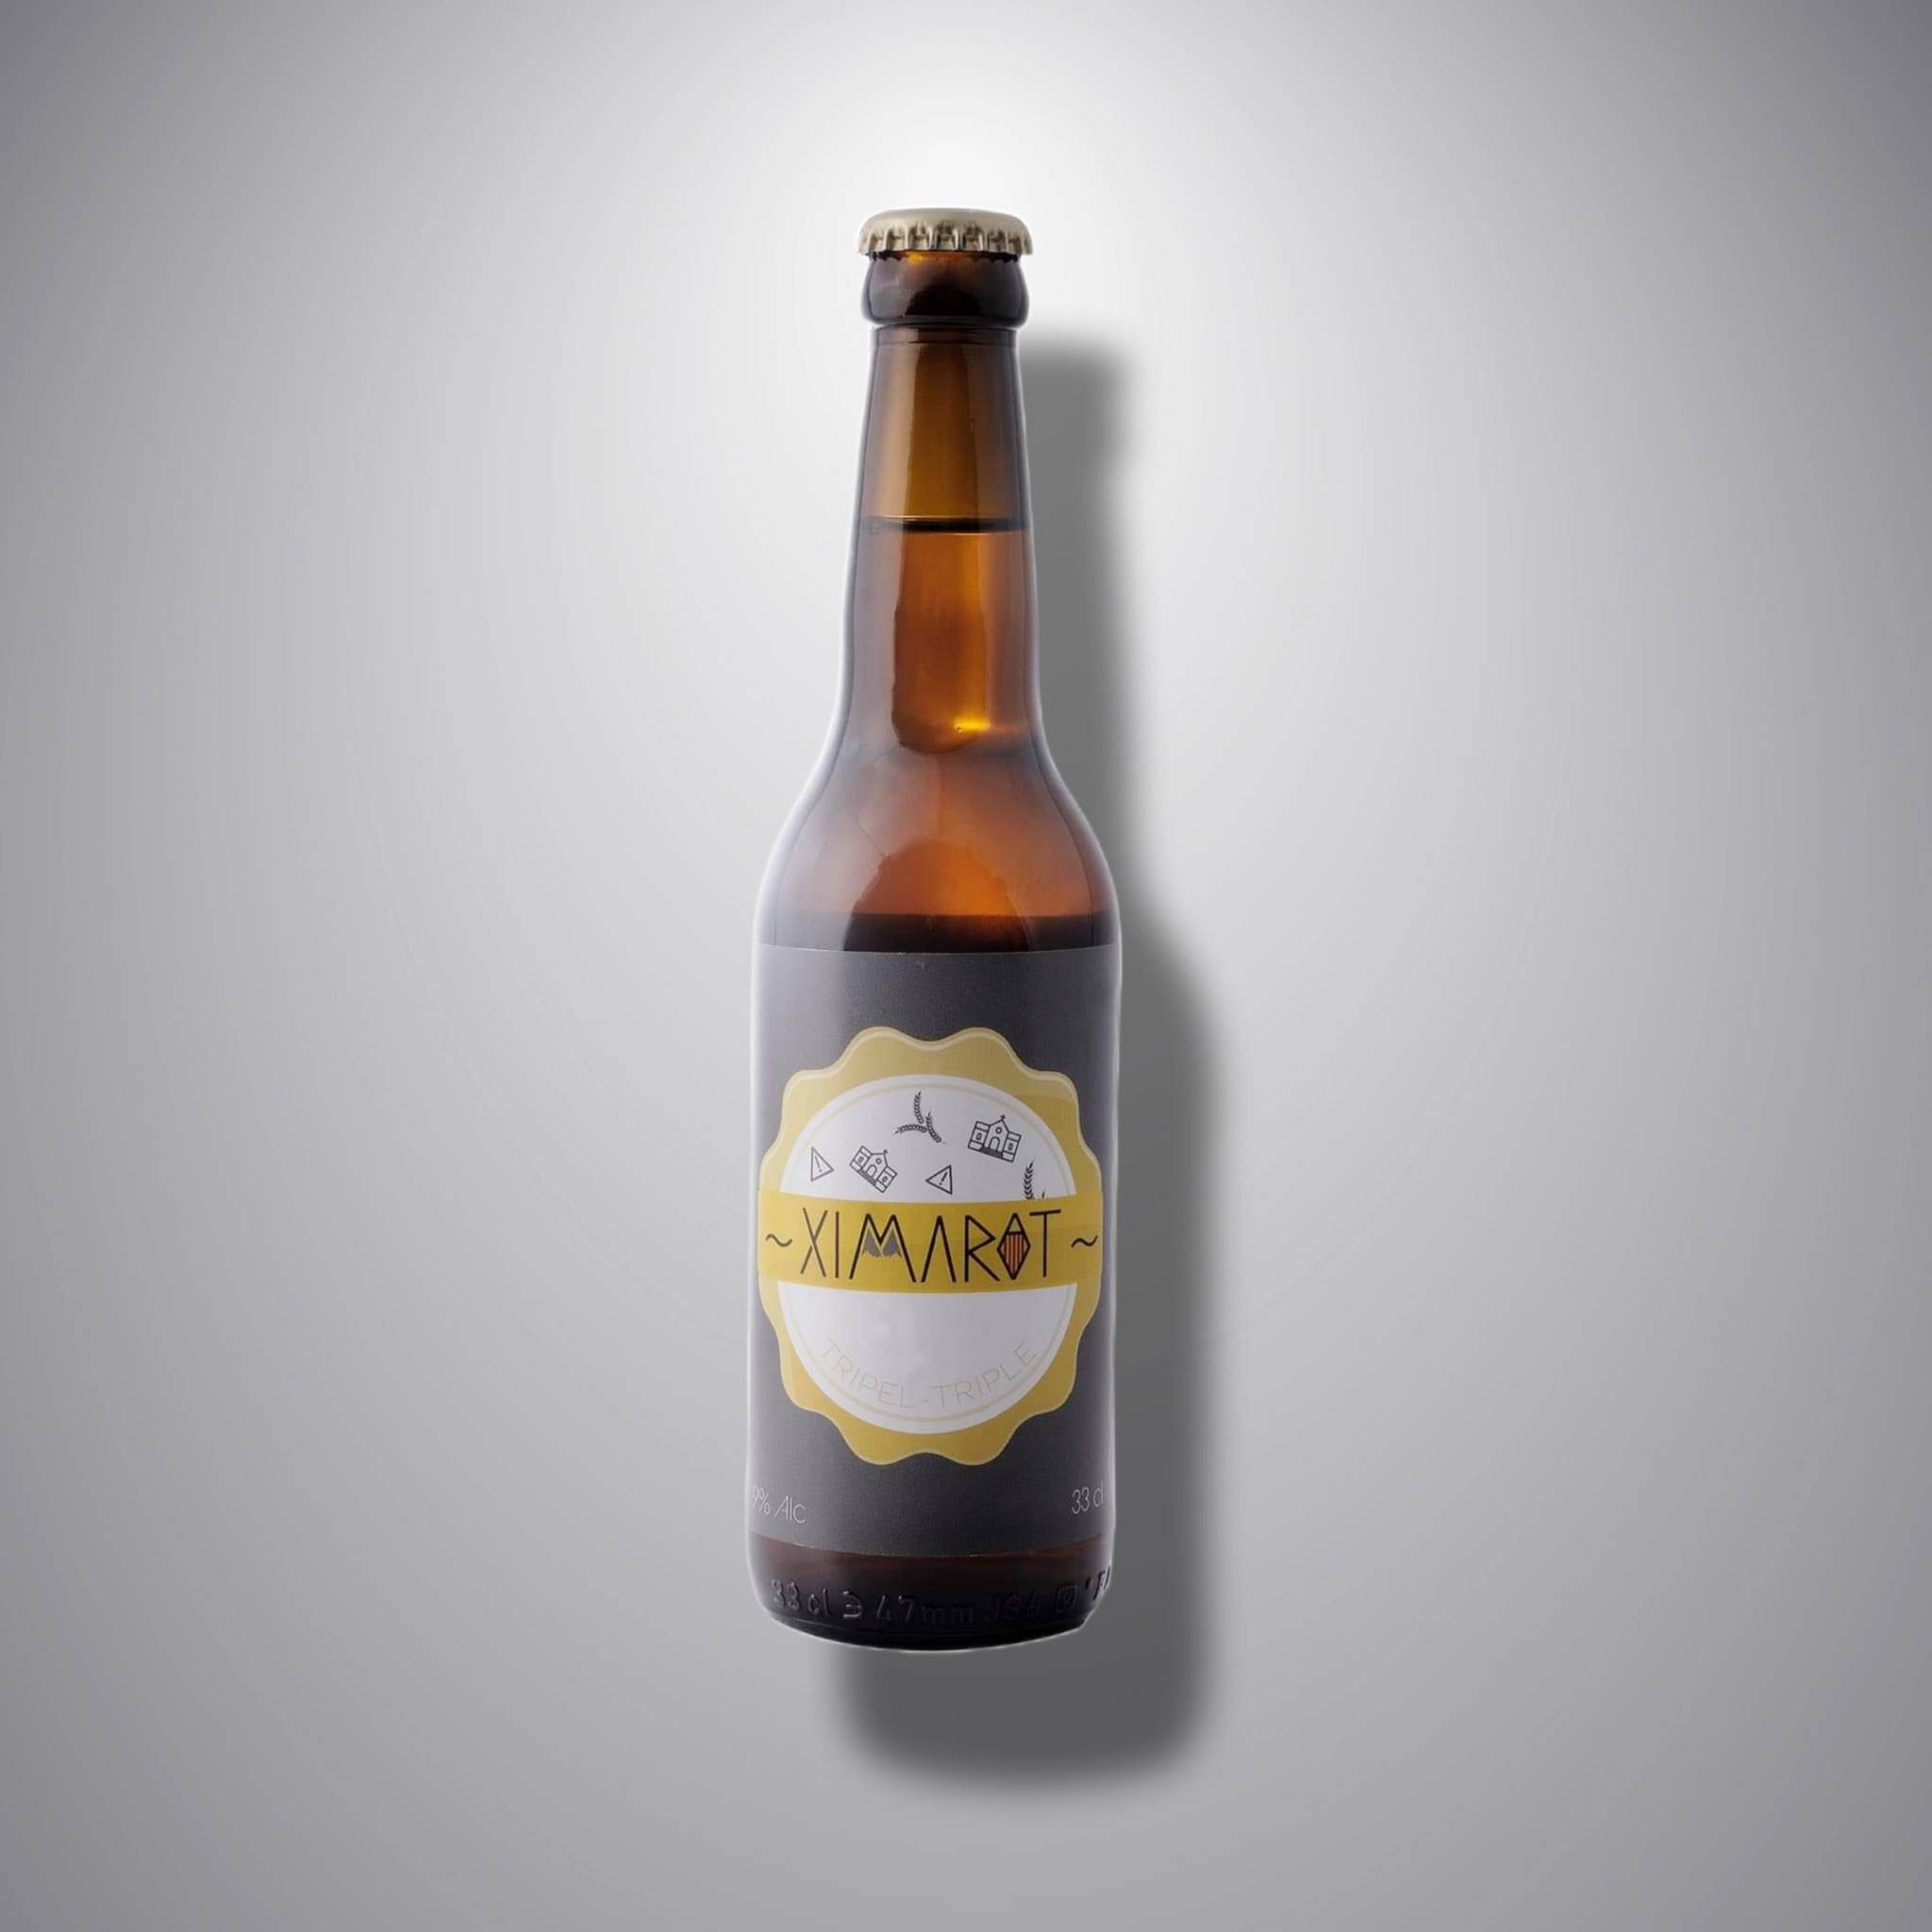 XIMAROT, bières Apoulit ( 9% alc )